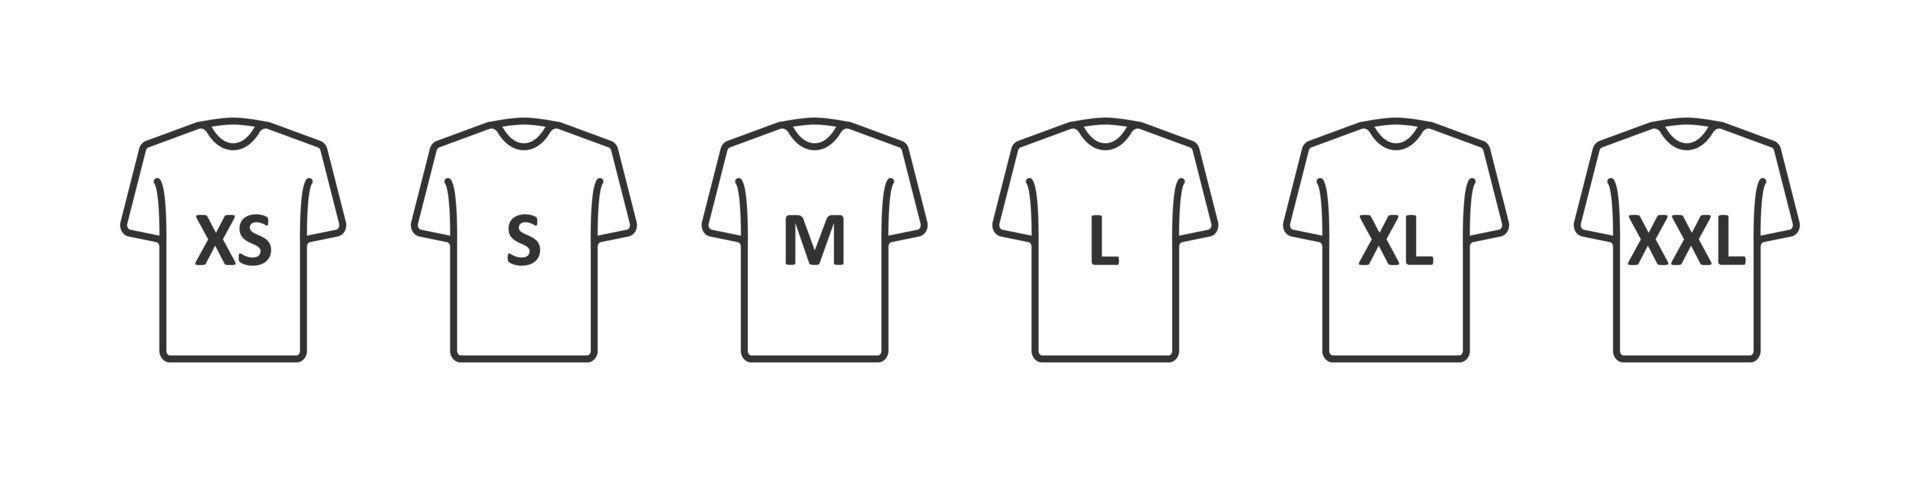 Taille du T-shirt. étiquette ou étiquette de taille de vêtement. du xs au xxl. vecteur